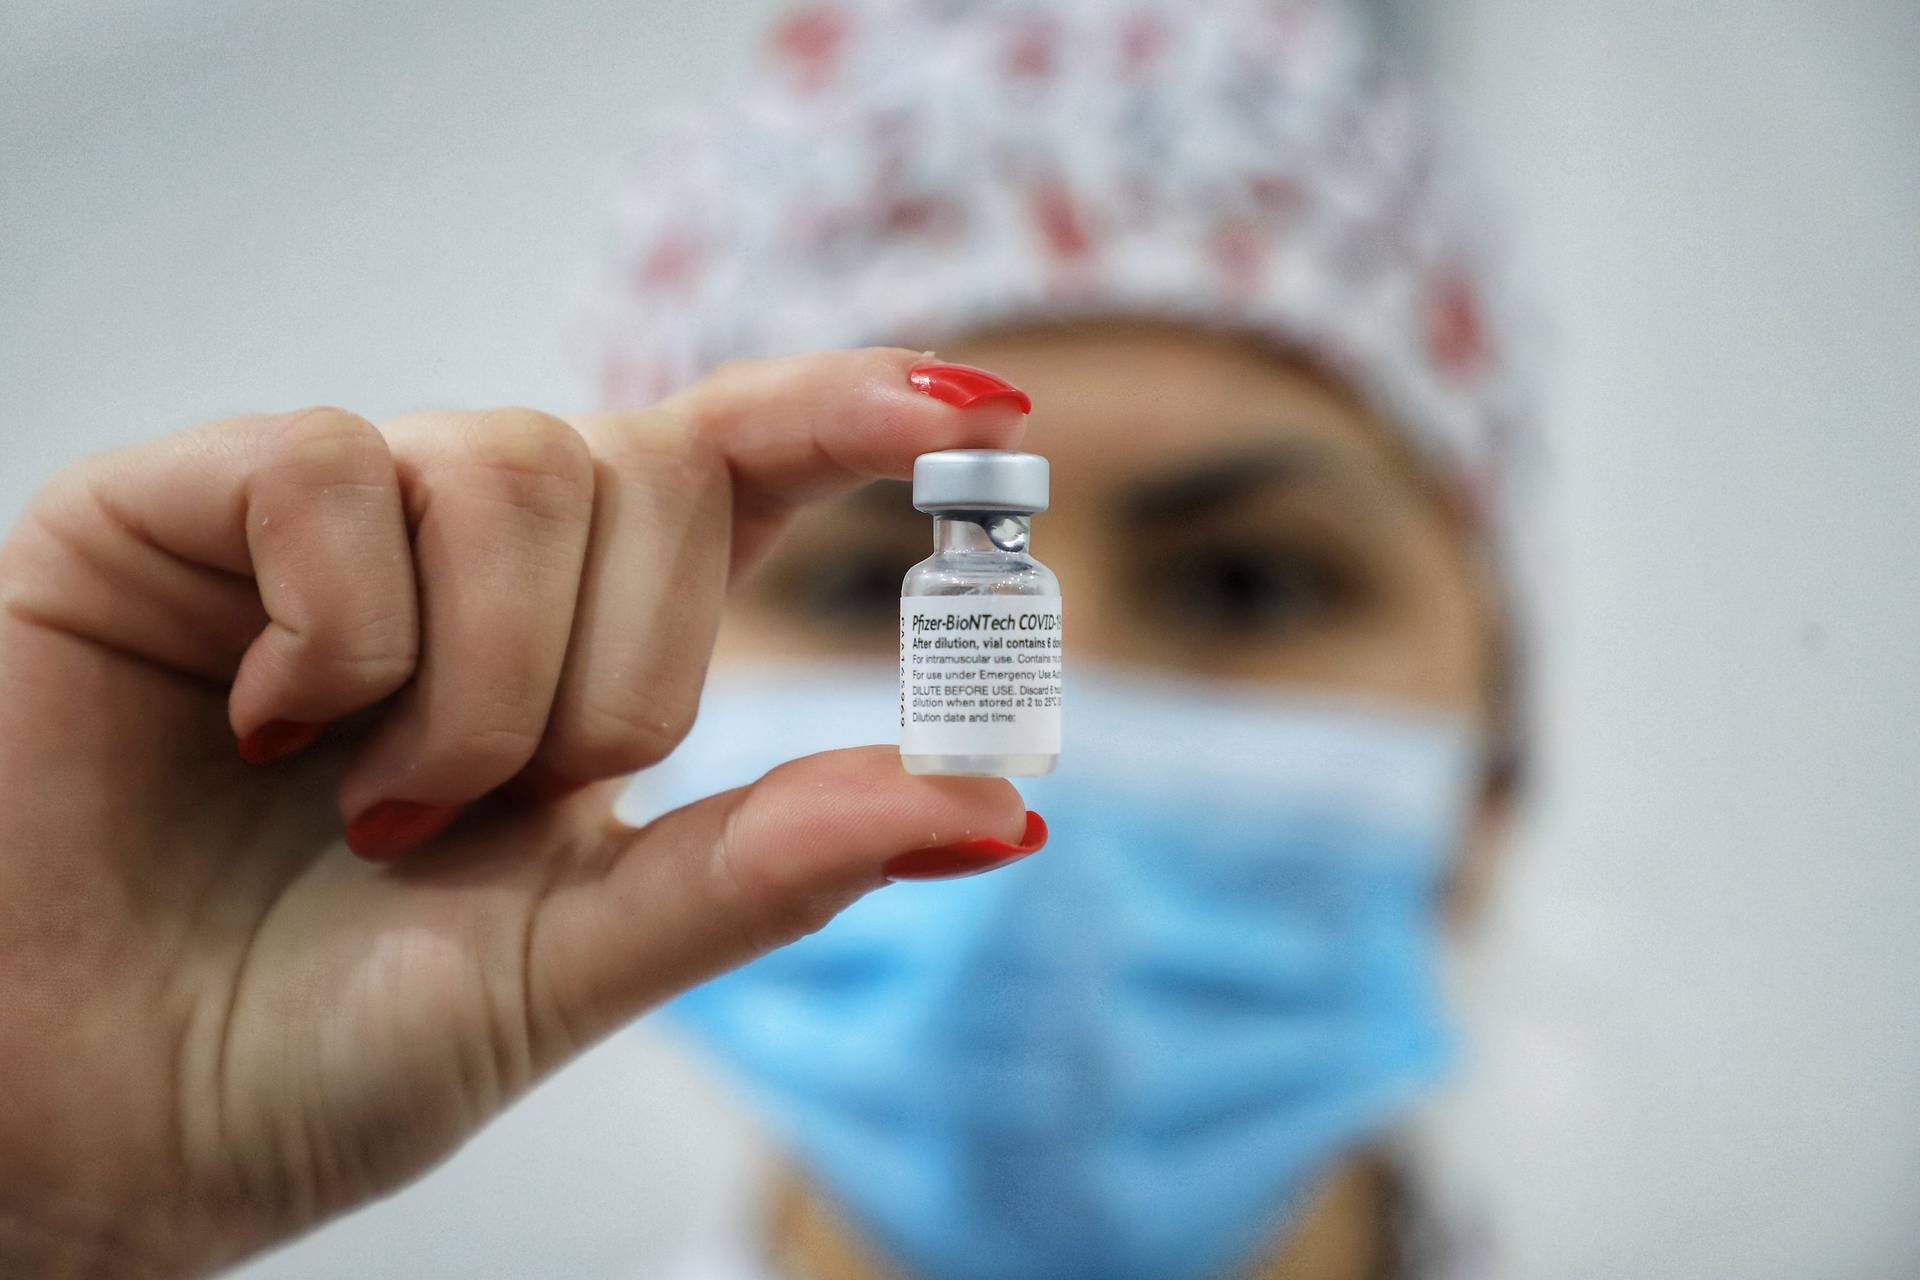  Legislativo debate “passaporte da vacina” para incentivar imunização no Paraná